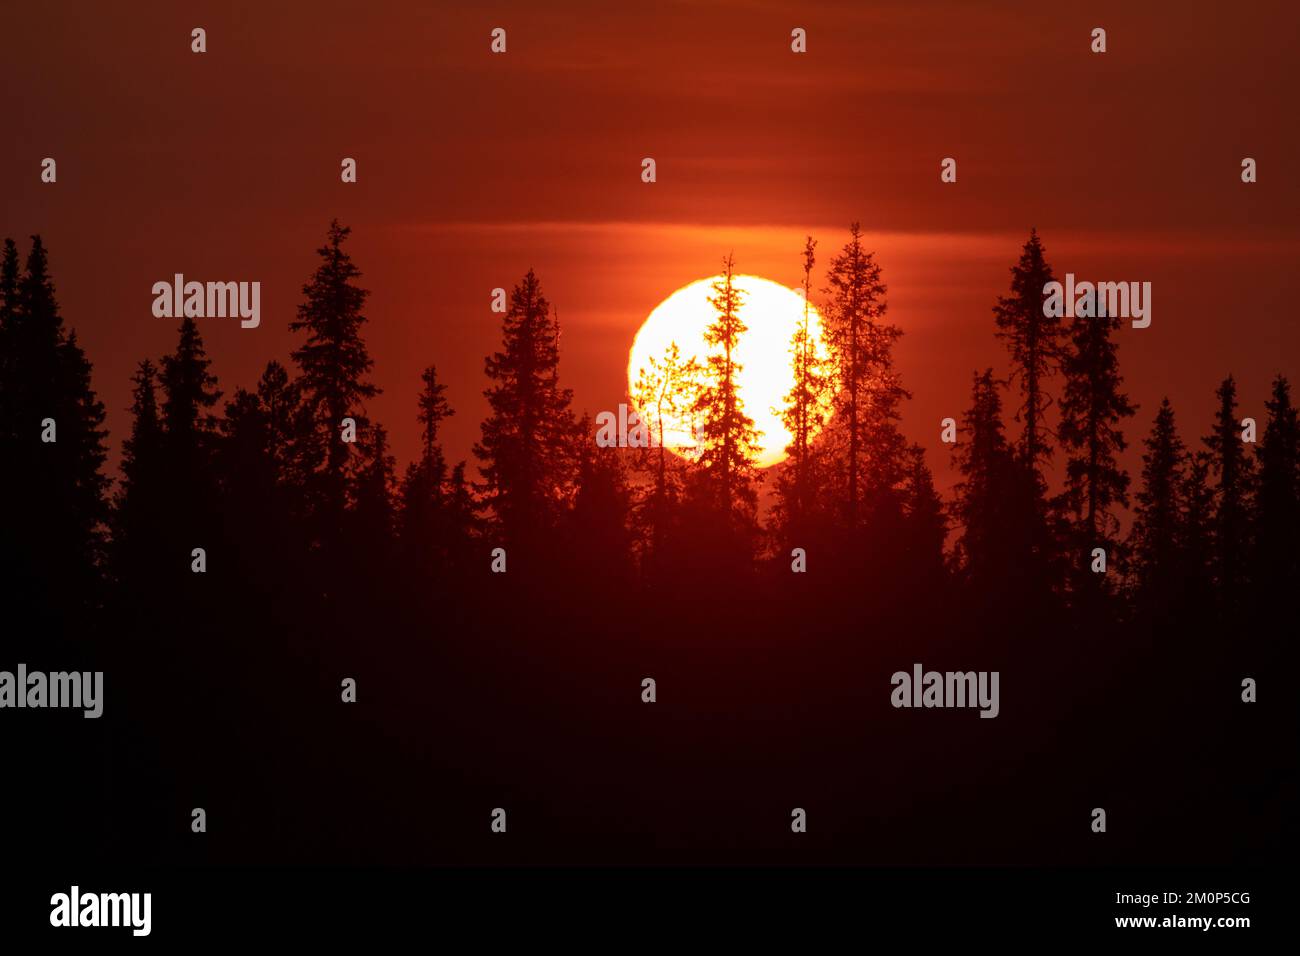 Grand soleil derrière une silhouette de forêt taïga pendant une nuit d'été près de Kuusamo, dans le nord de la Finlande Banque D'Images